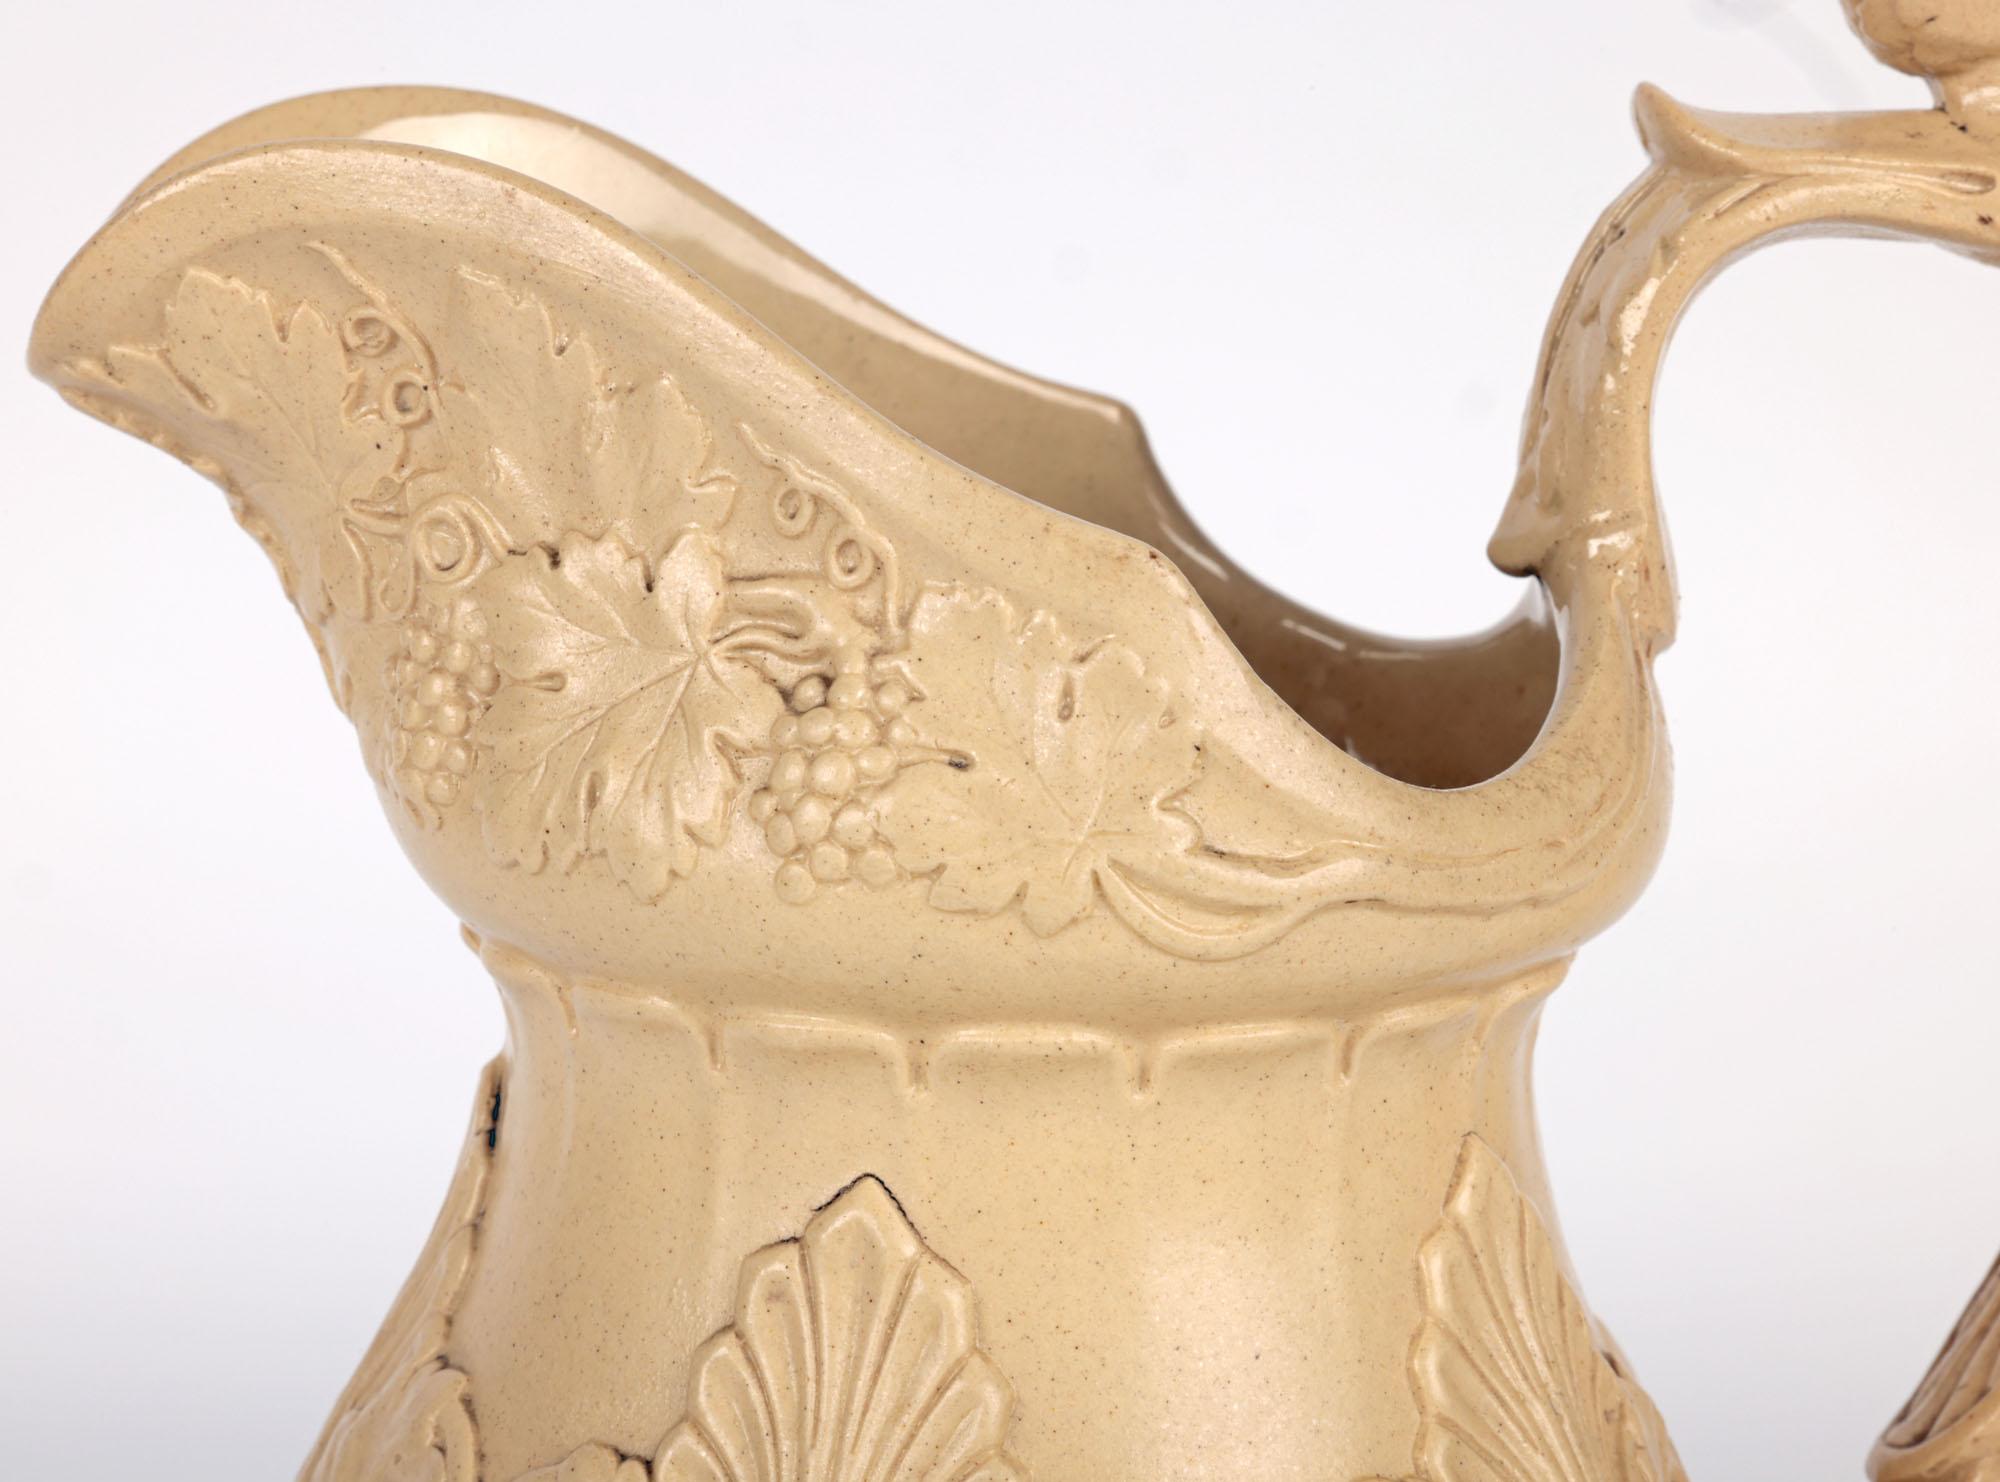 Une ancienne cruche en drabware anglaise de qualité représentant Bacchus et Pan, réalisée par le célèbre fabricant William Ridgway et datant d'environ 1834. La cruche en grès repose sur un piédestal étroit et rond, de forme arrondie et bulbeuse,